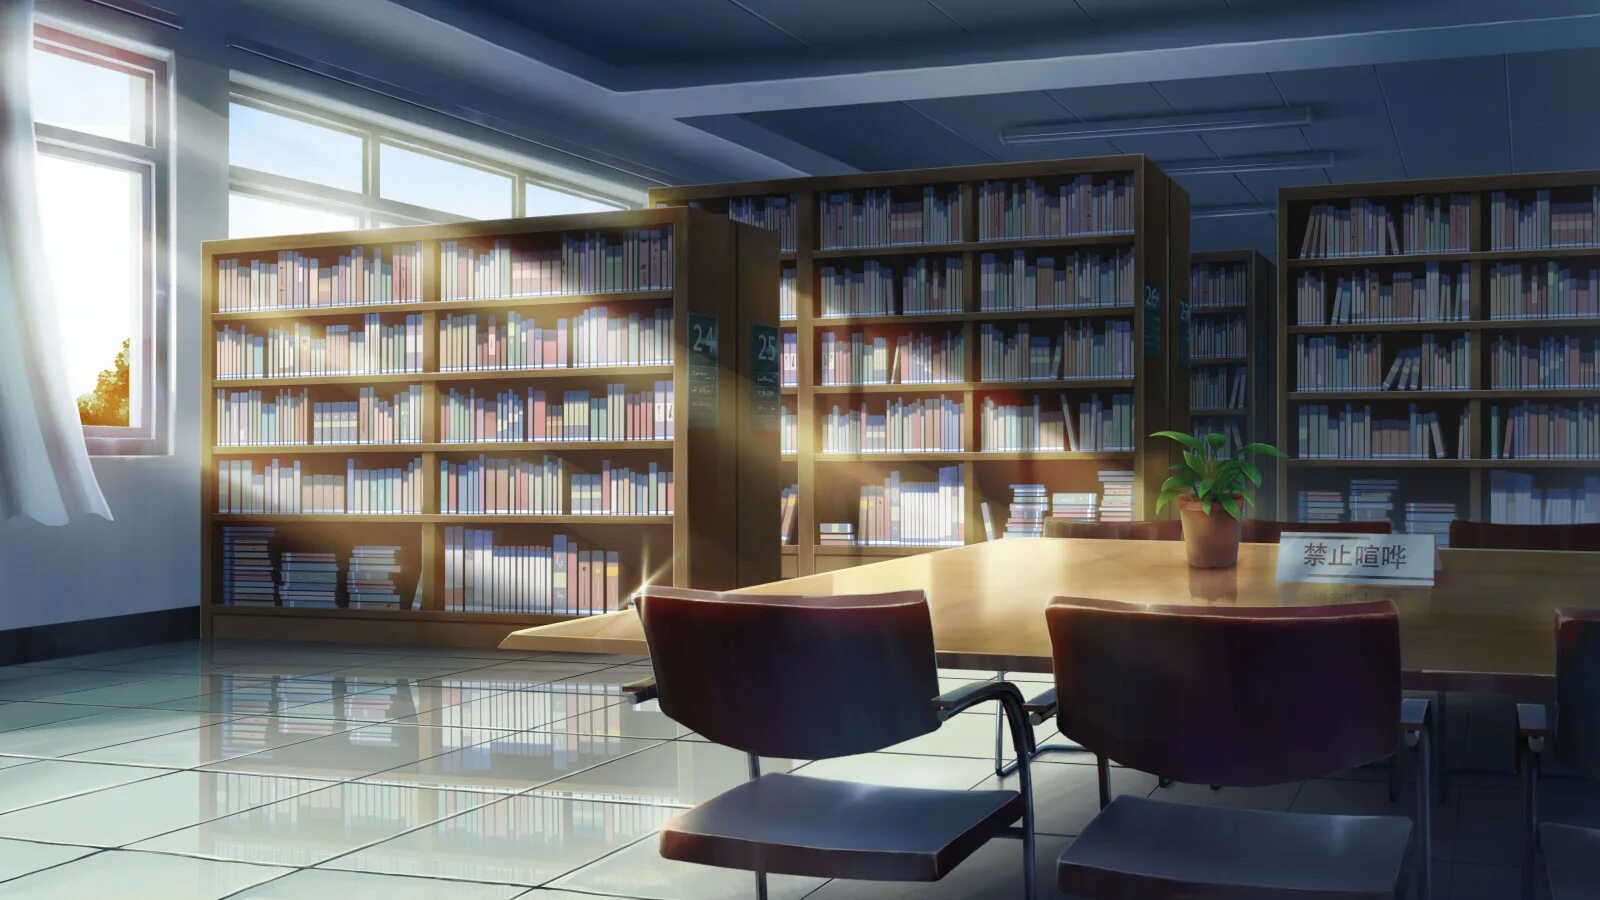 Войти в научную библиотеку. Библиотека Японии читальный зал. Библиотека арт. Красивая Школьная библиотека.